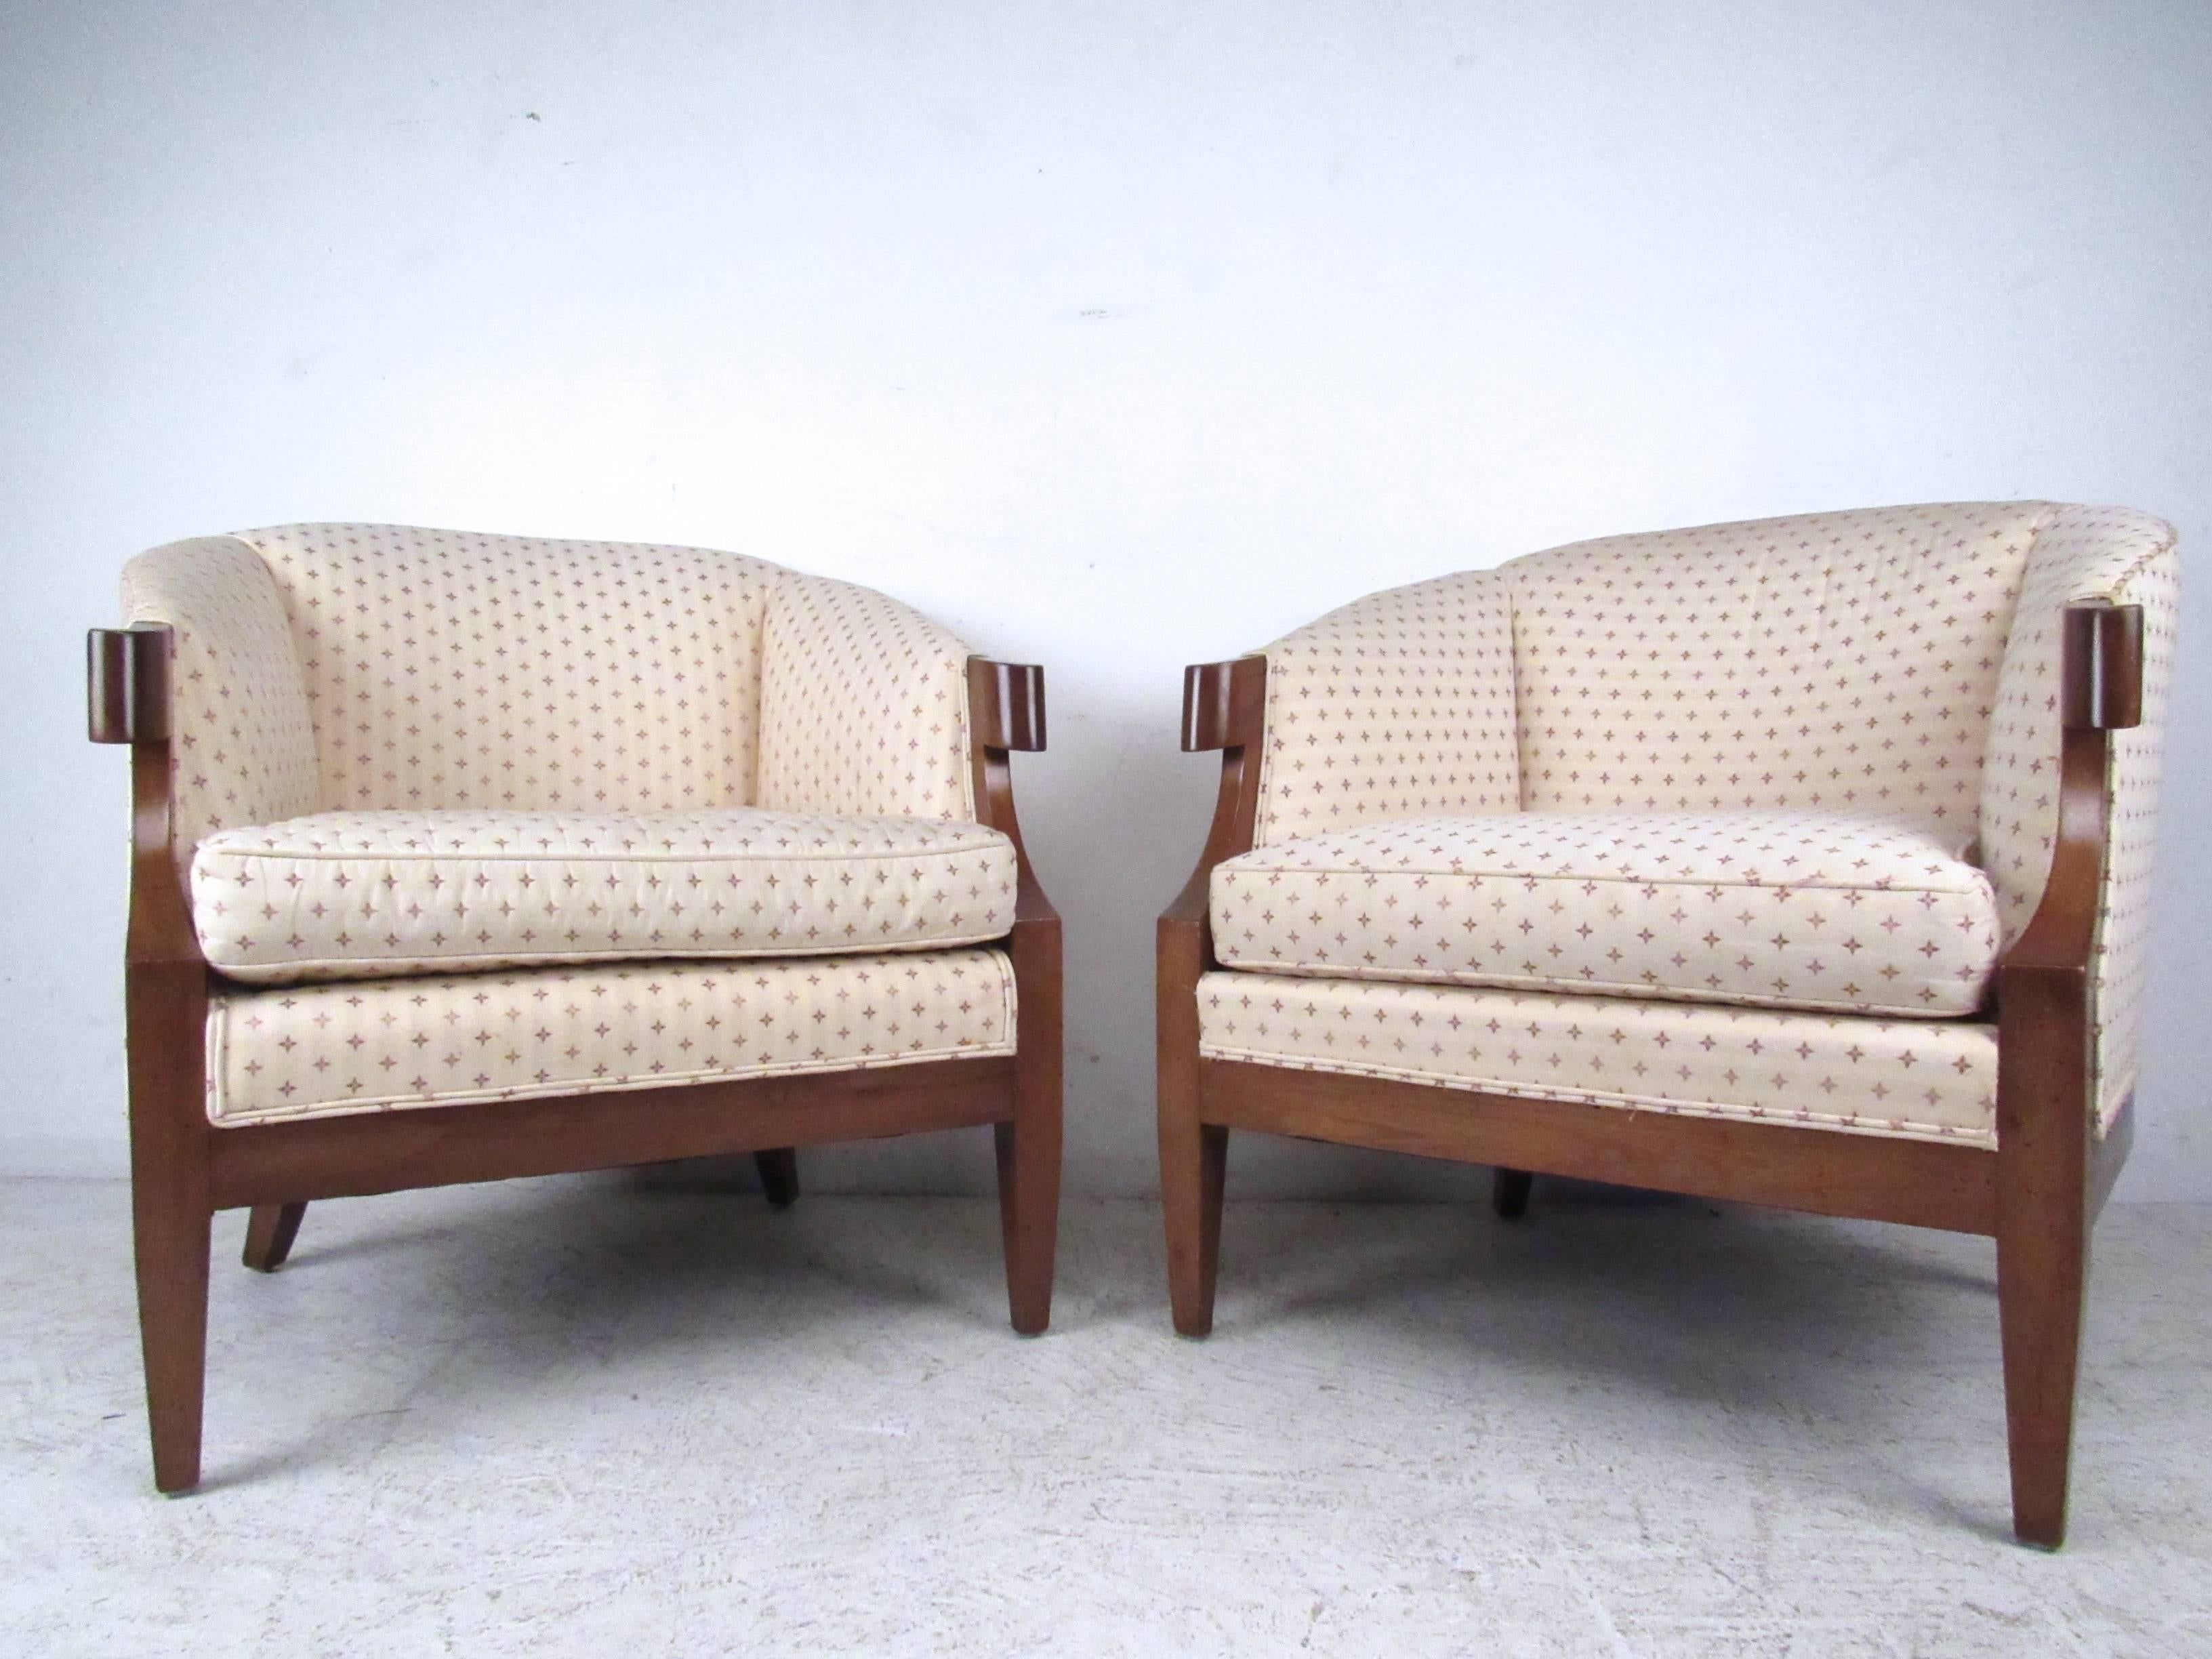 Dieses einzigartige und bequeme Paar passender Sessel zeichnet sich durch eine einzigartige Polsterung, konisch zulaufende Beine und einzigartige gestutzte Armlehnen aus. Die Griffe aus Schnörkelholz unterstreichen den Charme des Stücks. Bitte